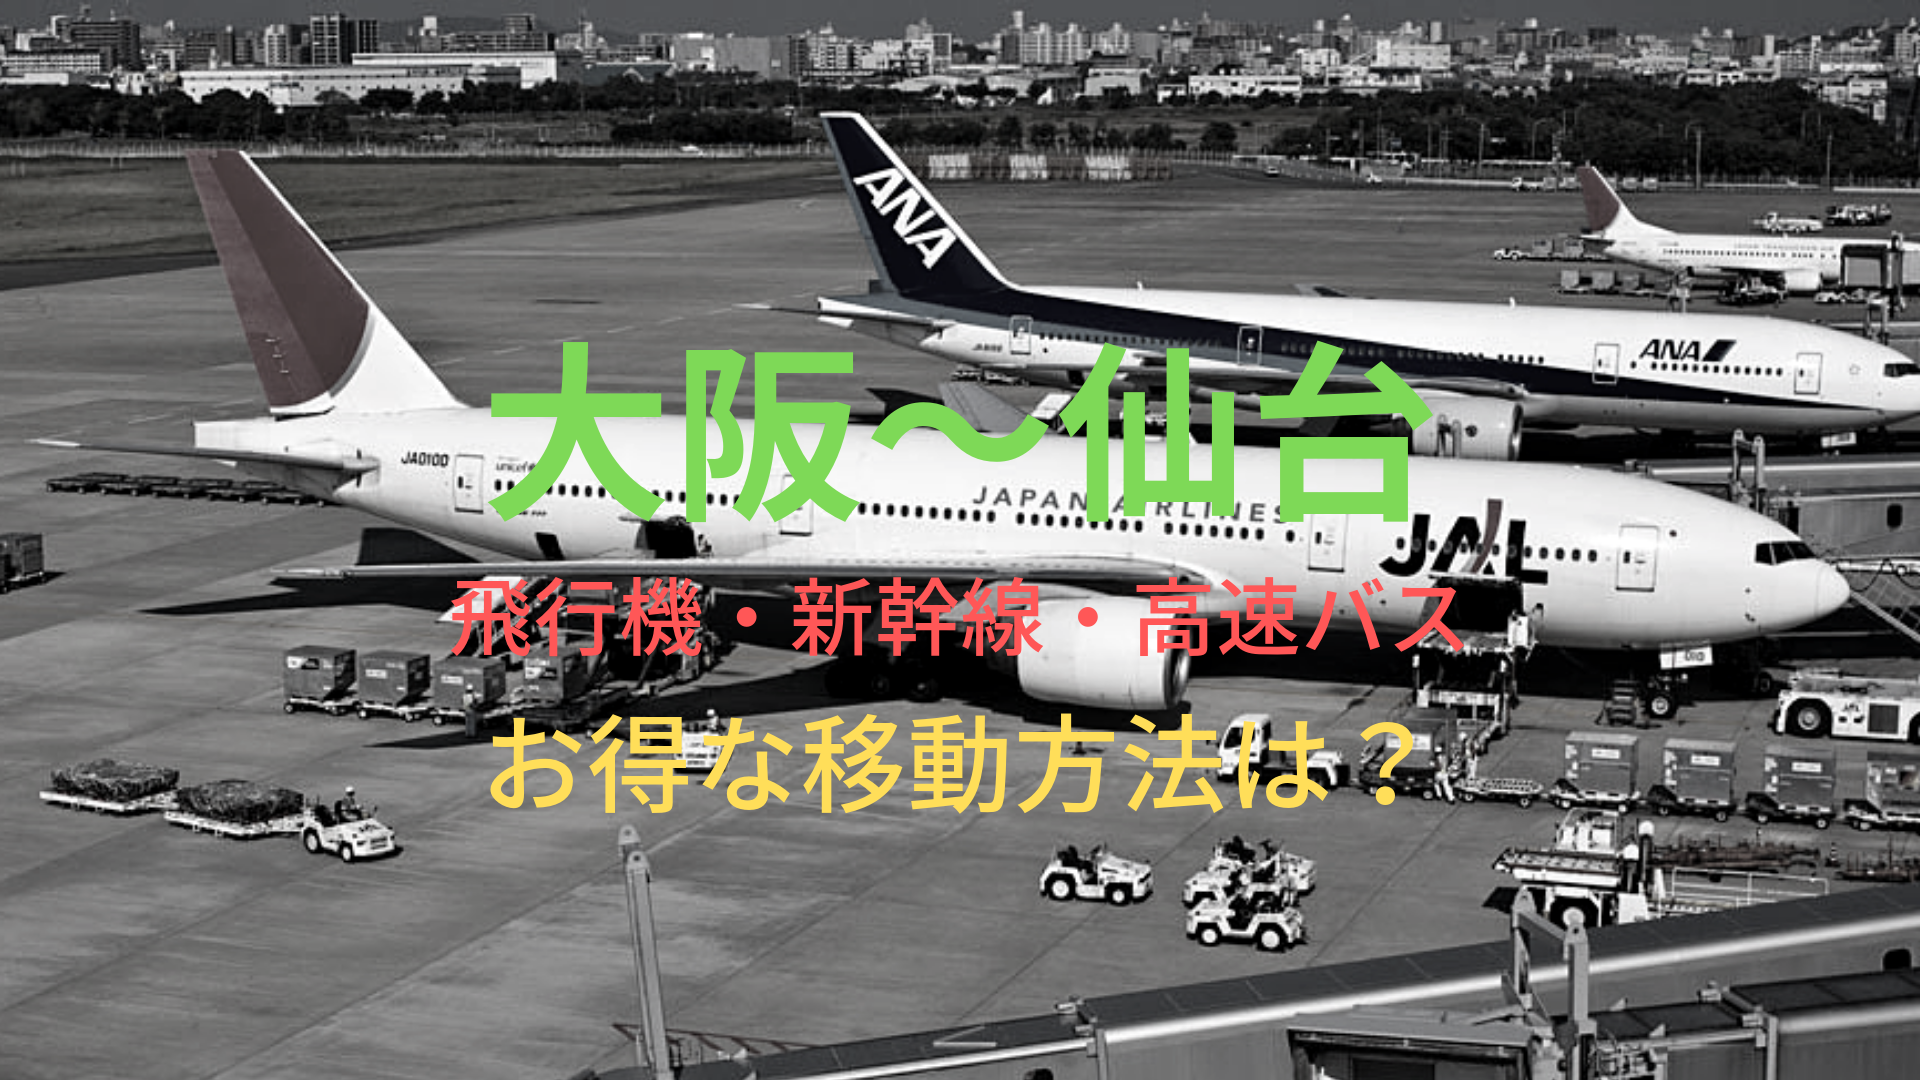 大阪 仙台 6000円 格安で移動する方法は 飛行機 新幹線 高速バスをそれぞれ比較 ばしたく交通